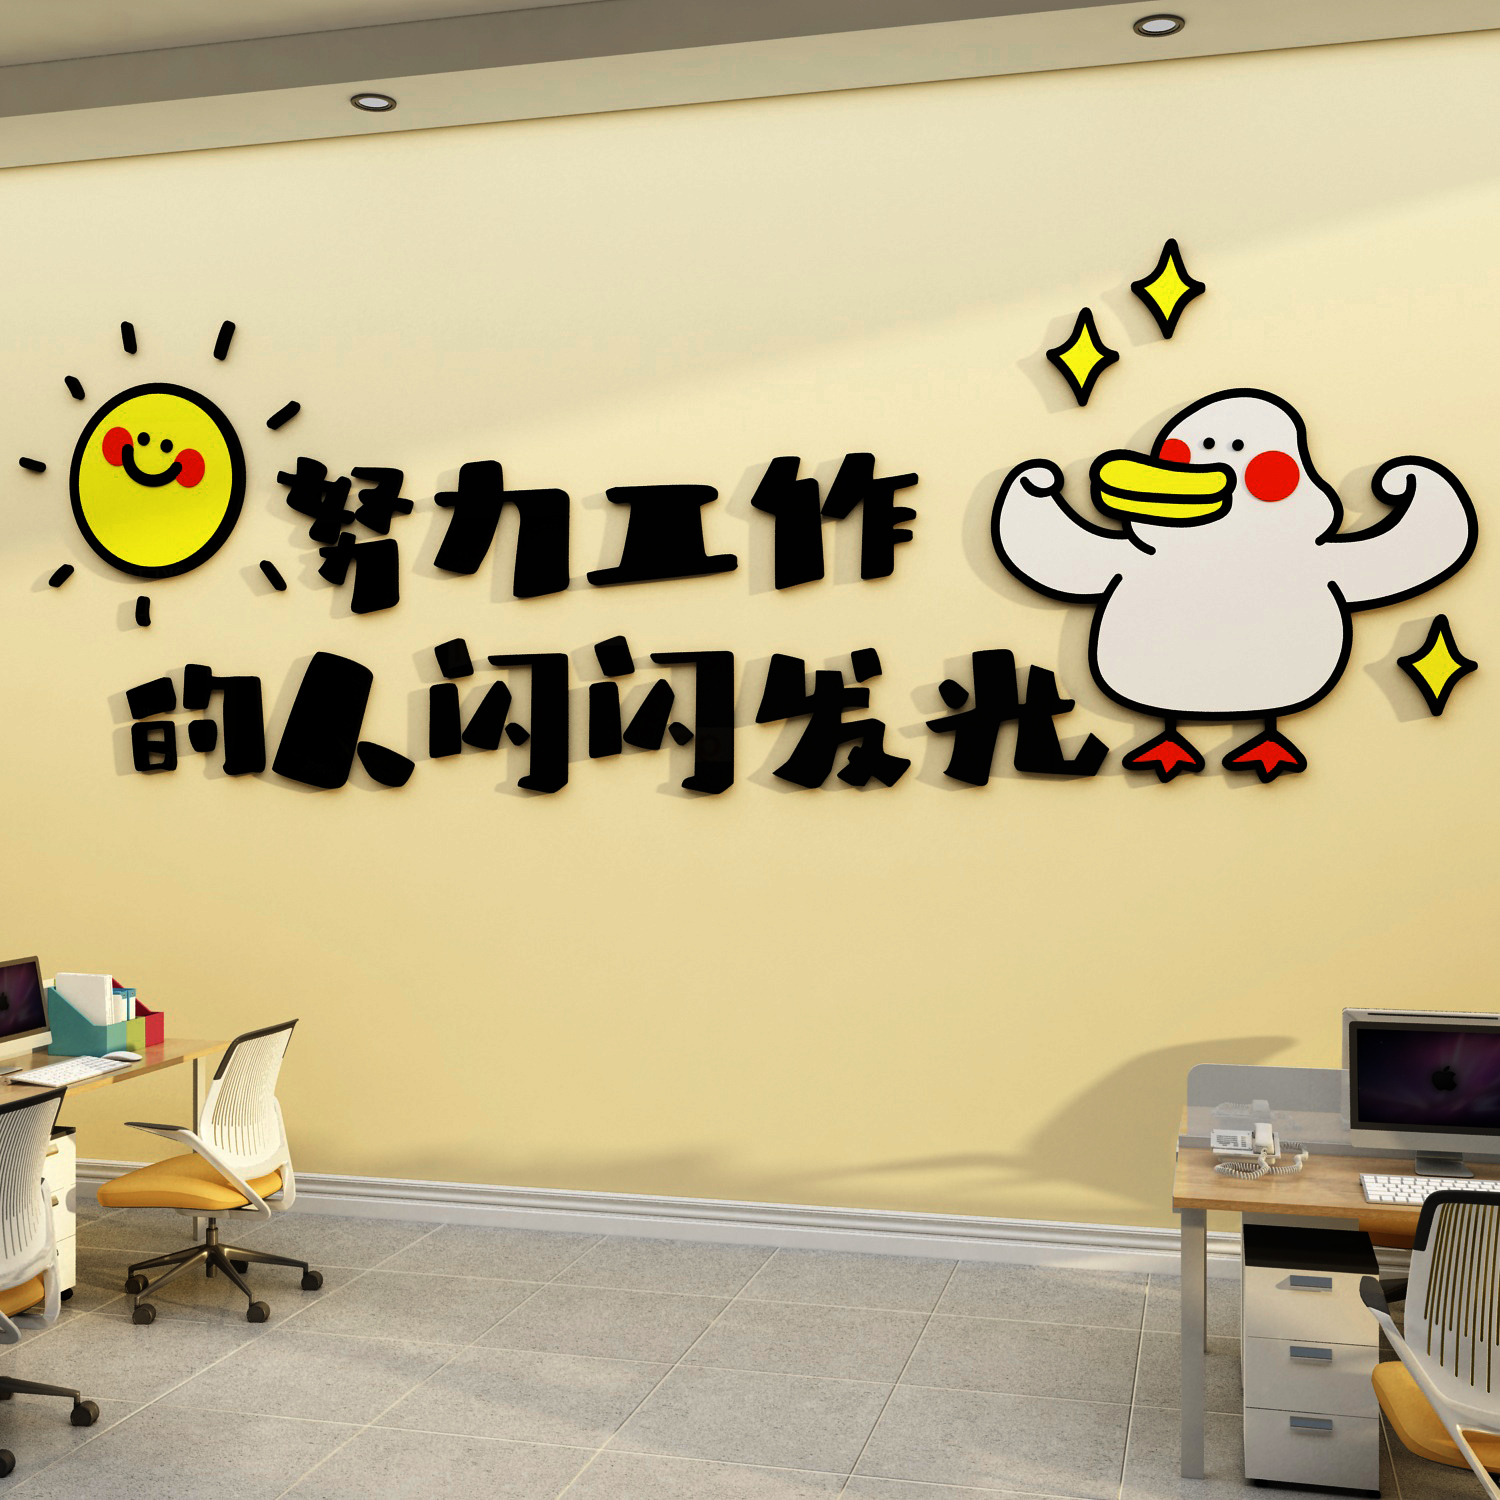 办公室墙面装饰企业文化楼梯台阶贴纸布置创意激励志标语公司背景